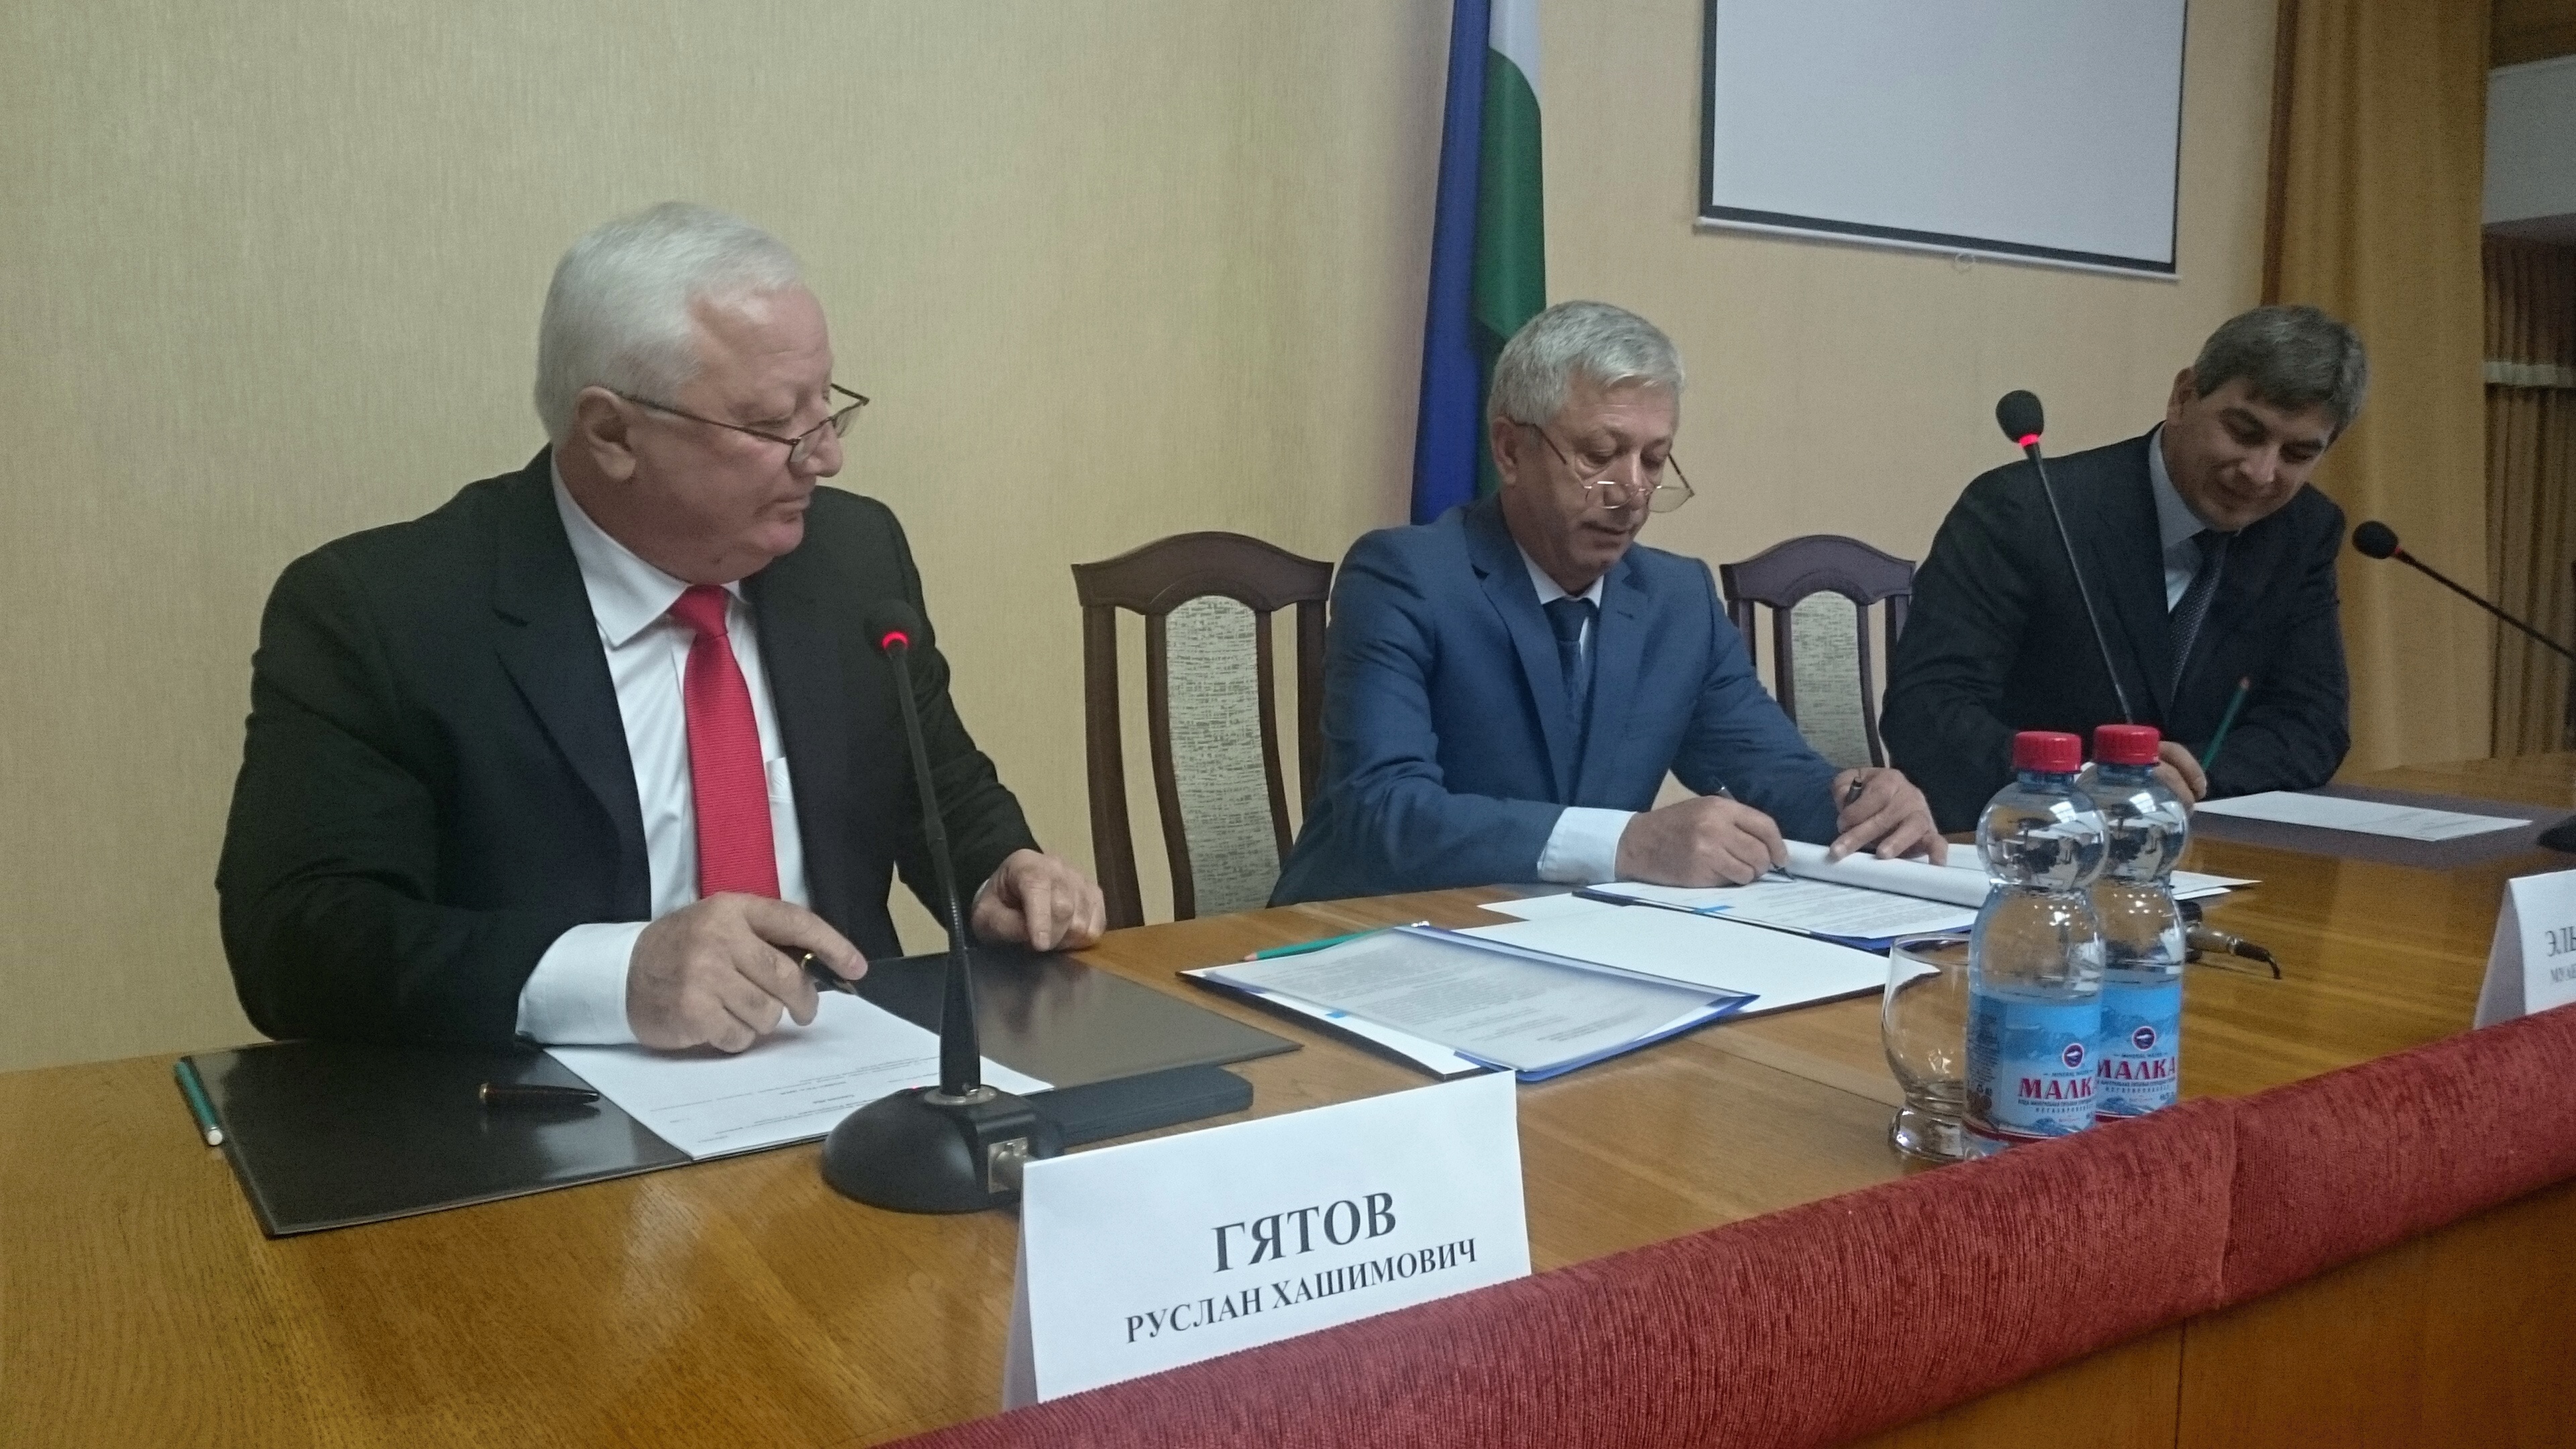 Руслан Гятов переизбран на должность главы администрации Зольского района